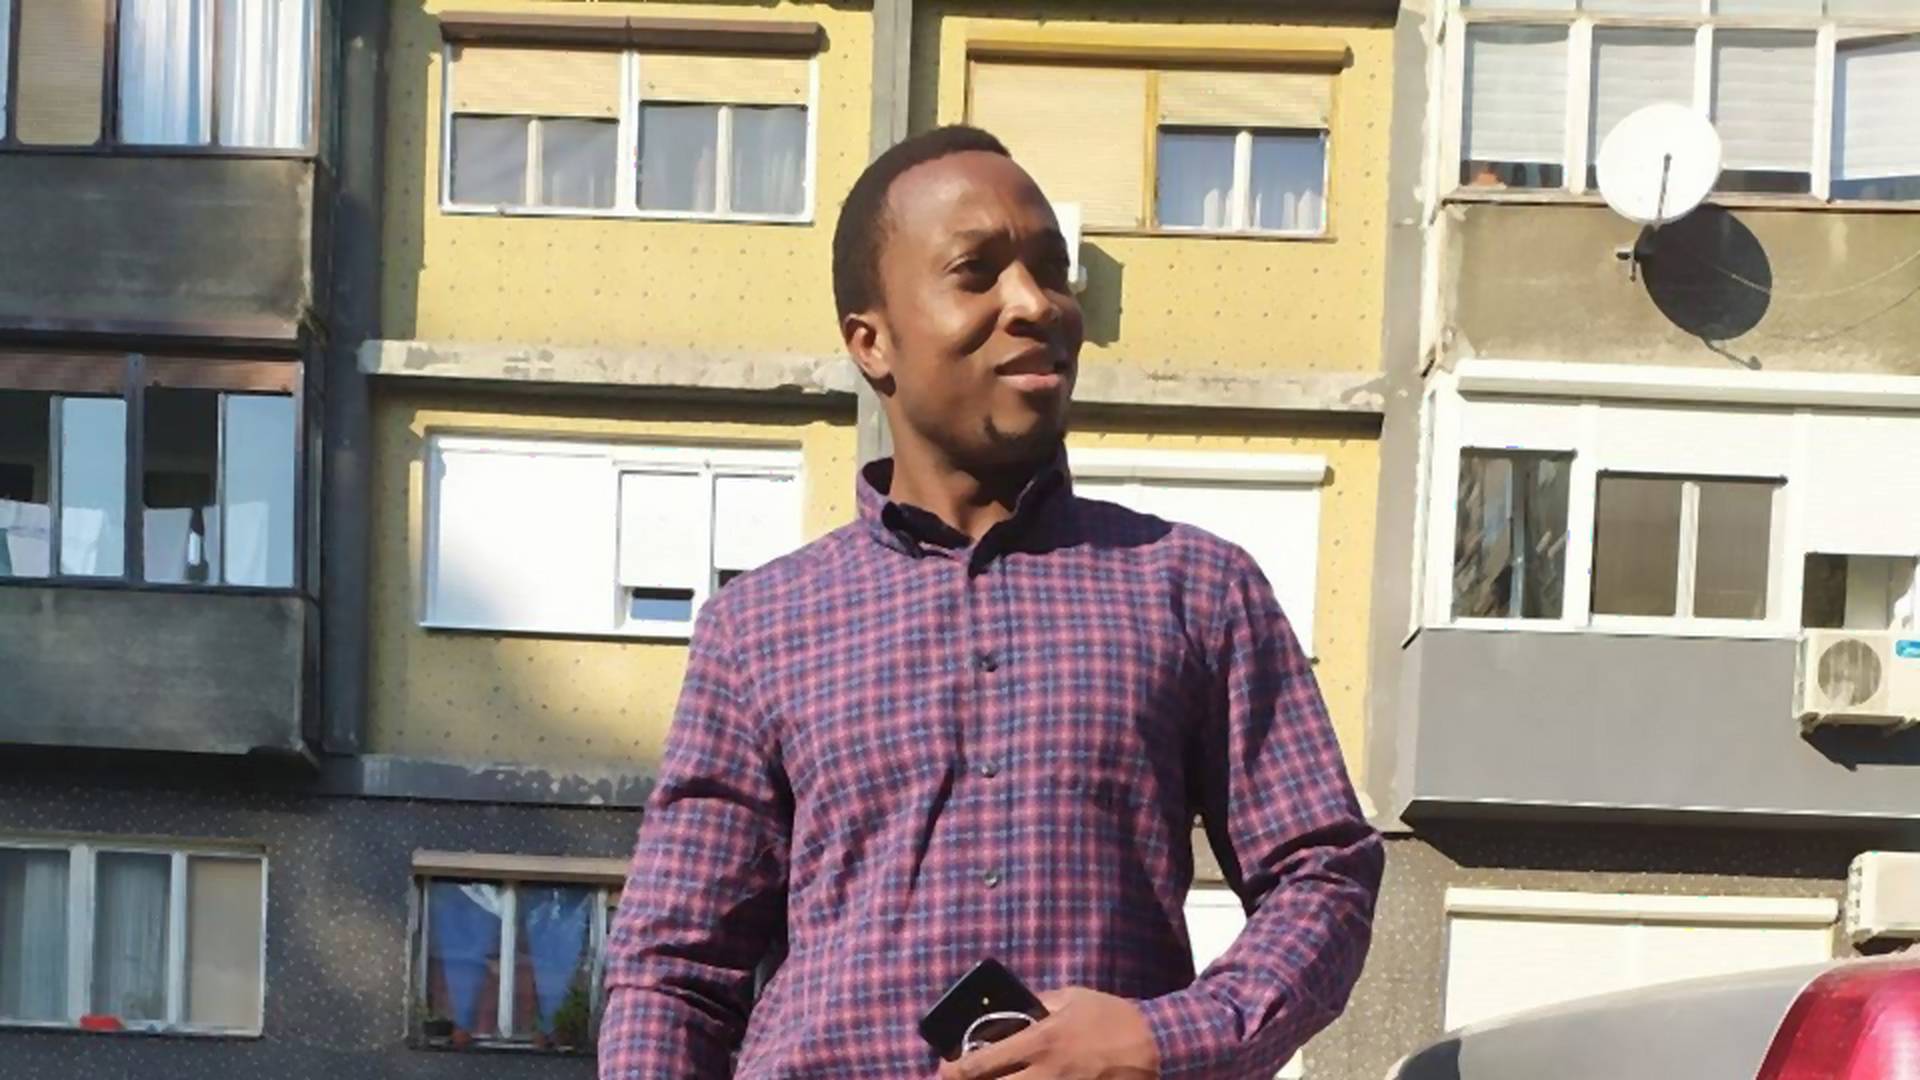 Student iz Kenije preminuo u Beogradu. Prijatelji kažu da niko nije hteo da ga pregleda jer nije imao kovid simptome